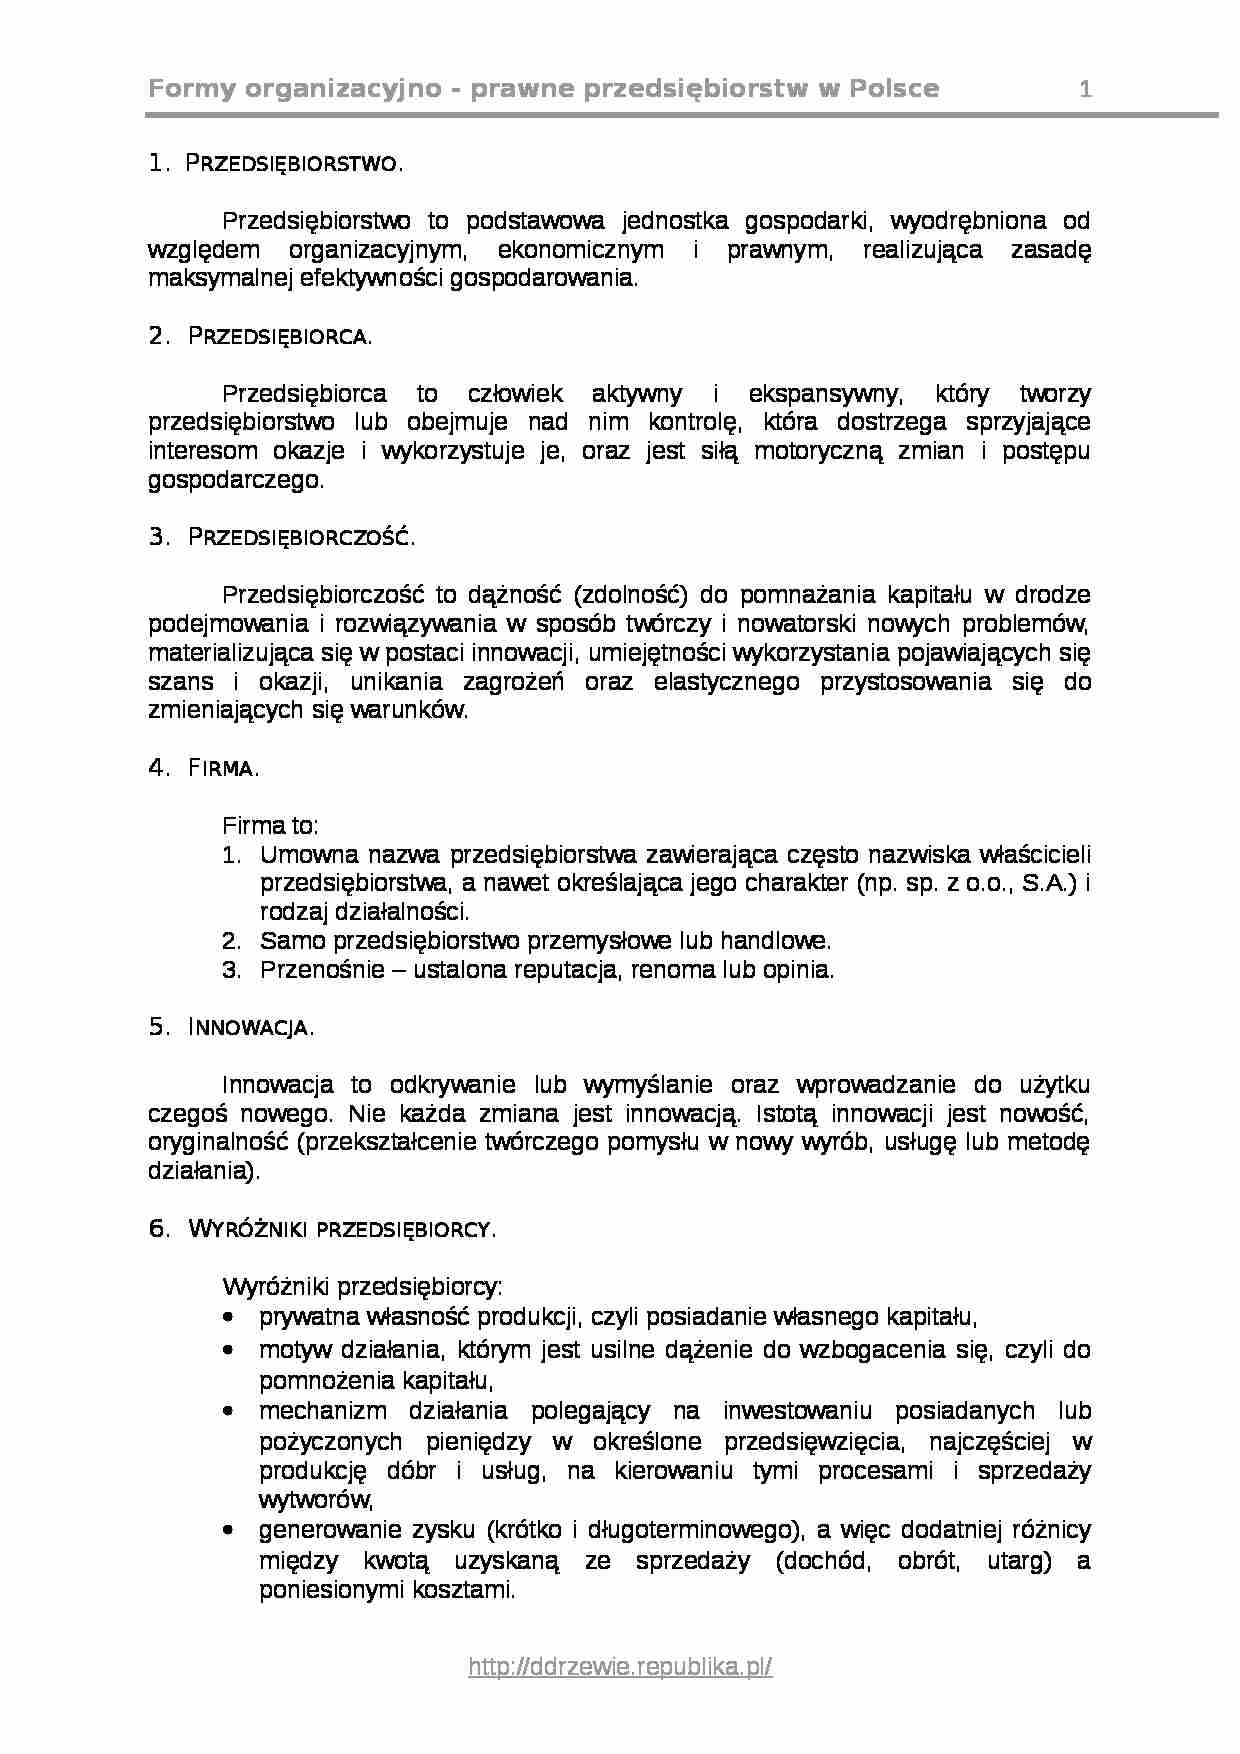 Formy organizacyjno prawne przedsiebiorstw w Polsce - strona 1